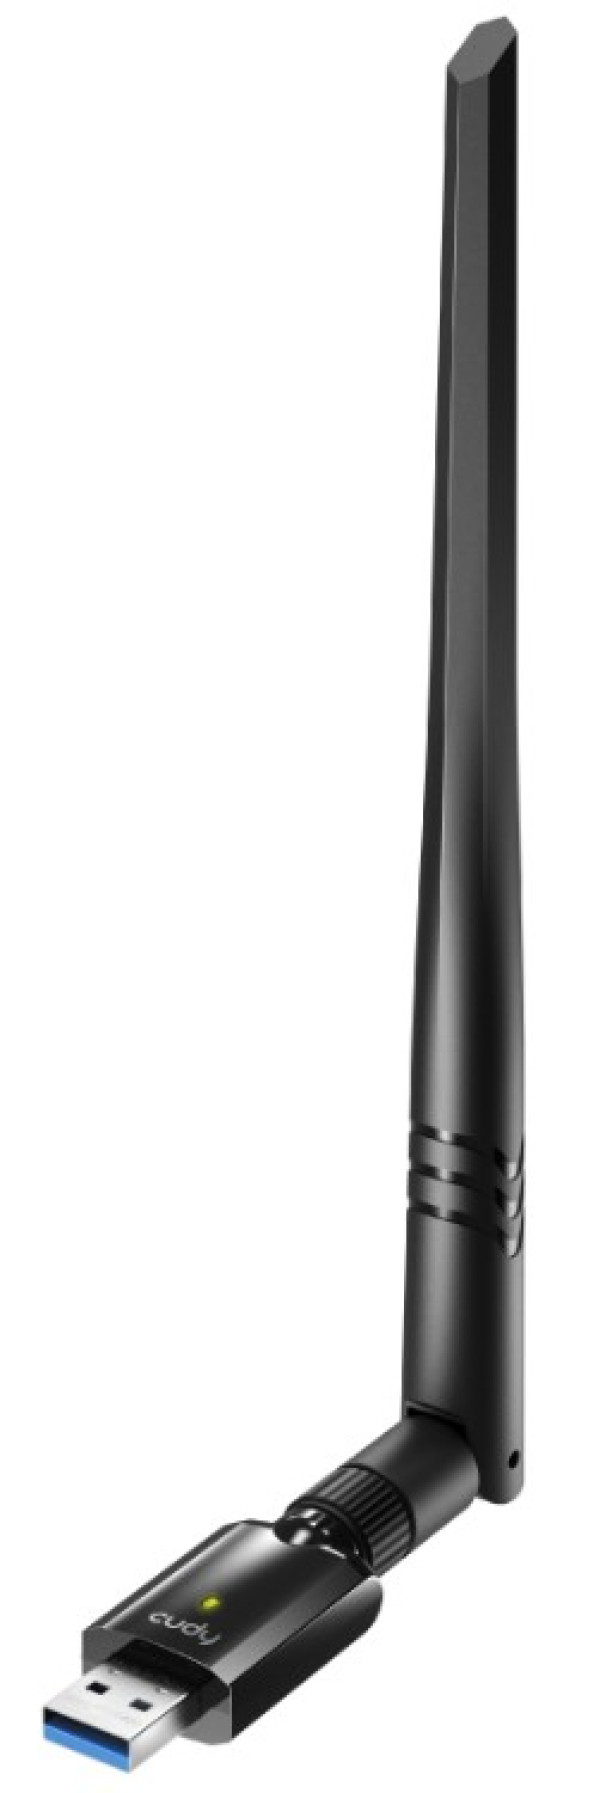 Cudy WU1400 AC1300 Wi-Fi USB 3.0 Adapter, 2.4+5Ghz, 5dBi high gain detachable antenna, AP support